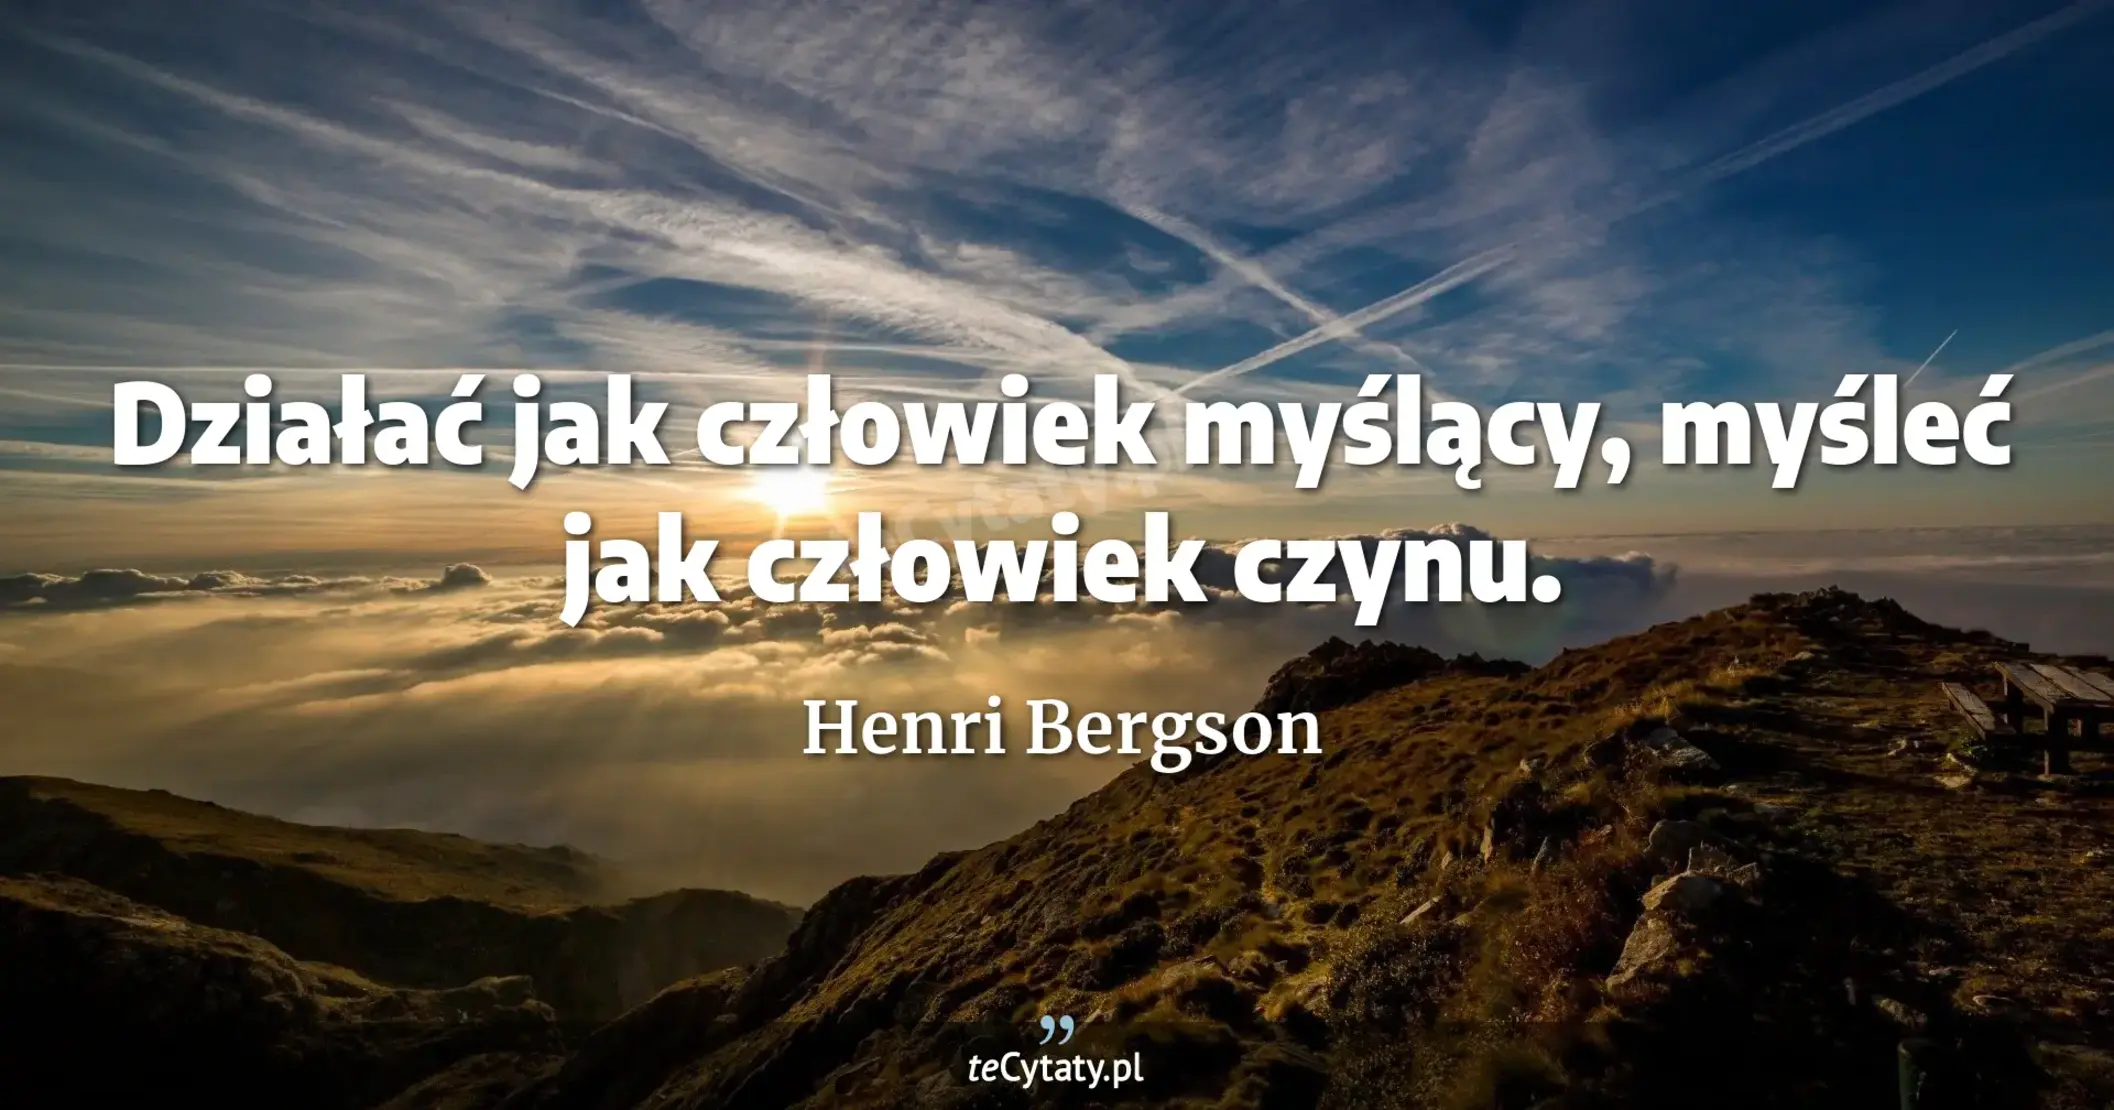 Działać jak człowiek myślący, myśleć jak człowiek czynu. - Henri Bergson